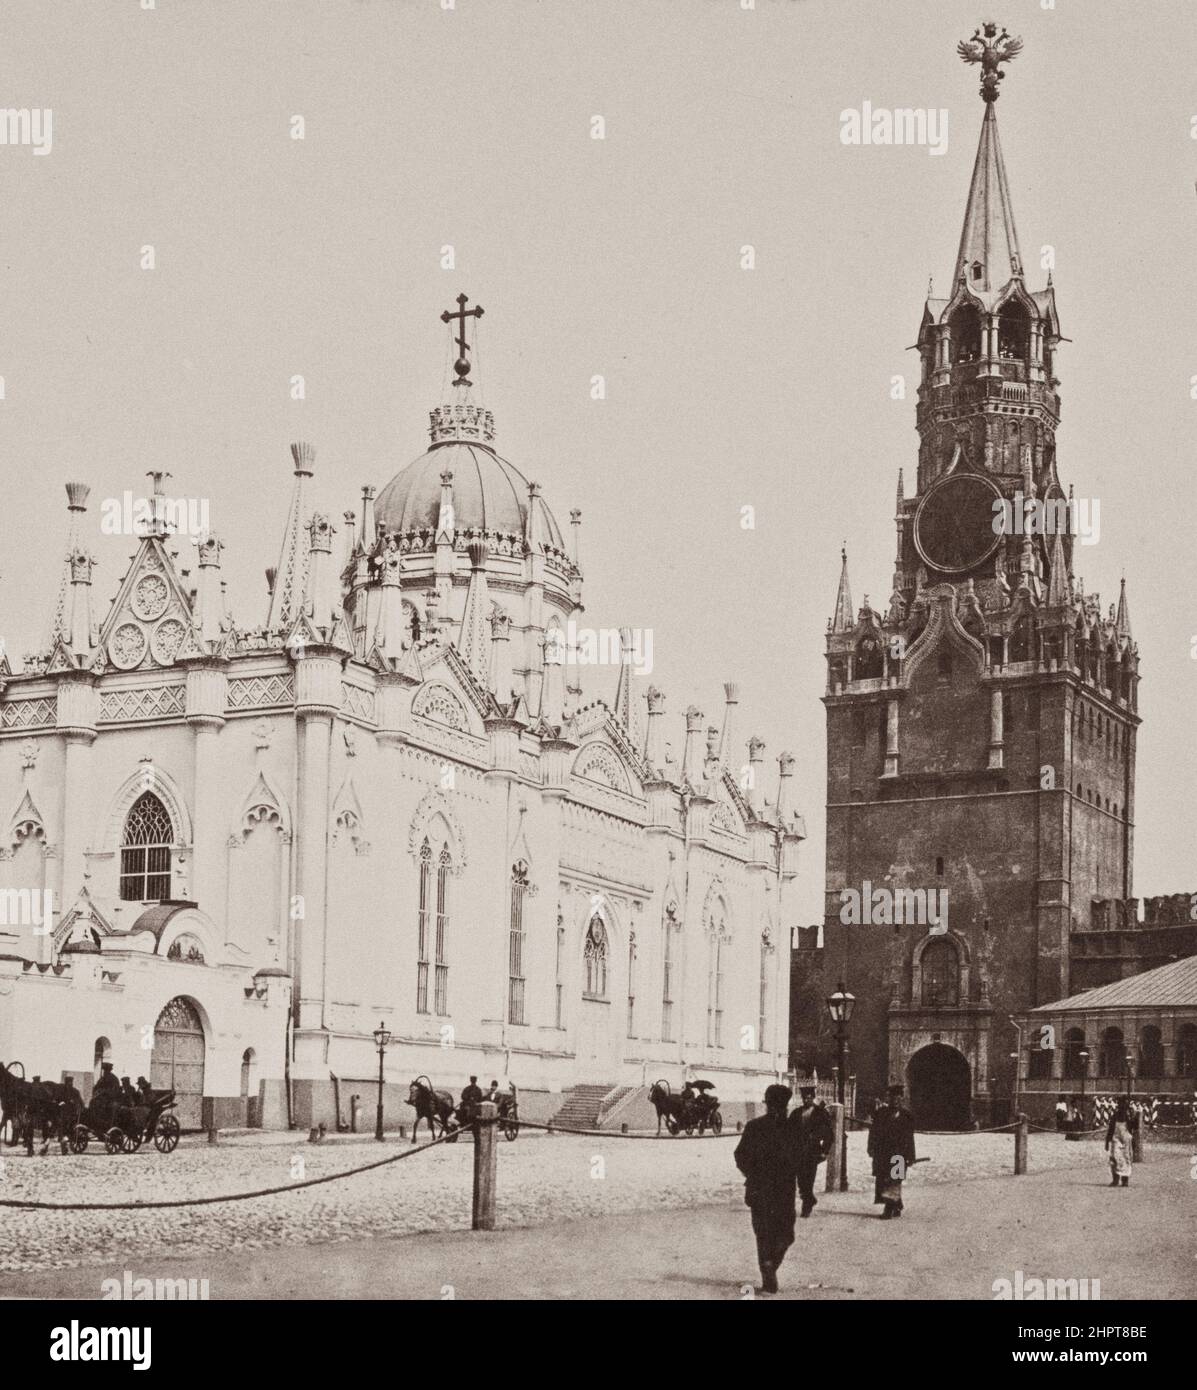 Photo d'époque du couvent de l'Ascension (couvent de Starodedichy) et de la porte de Spassky. Empire russe. 1900s Couvent de l'Ascension, connu sous le nom de Couvent de Starodedichy Banque D'Images